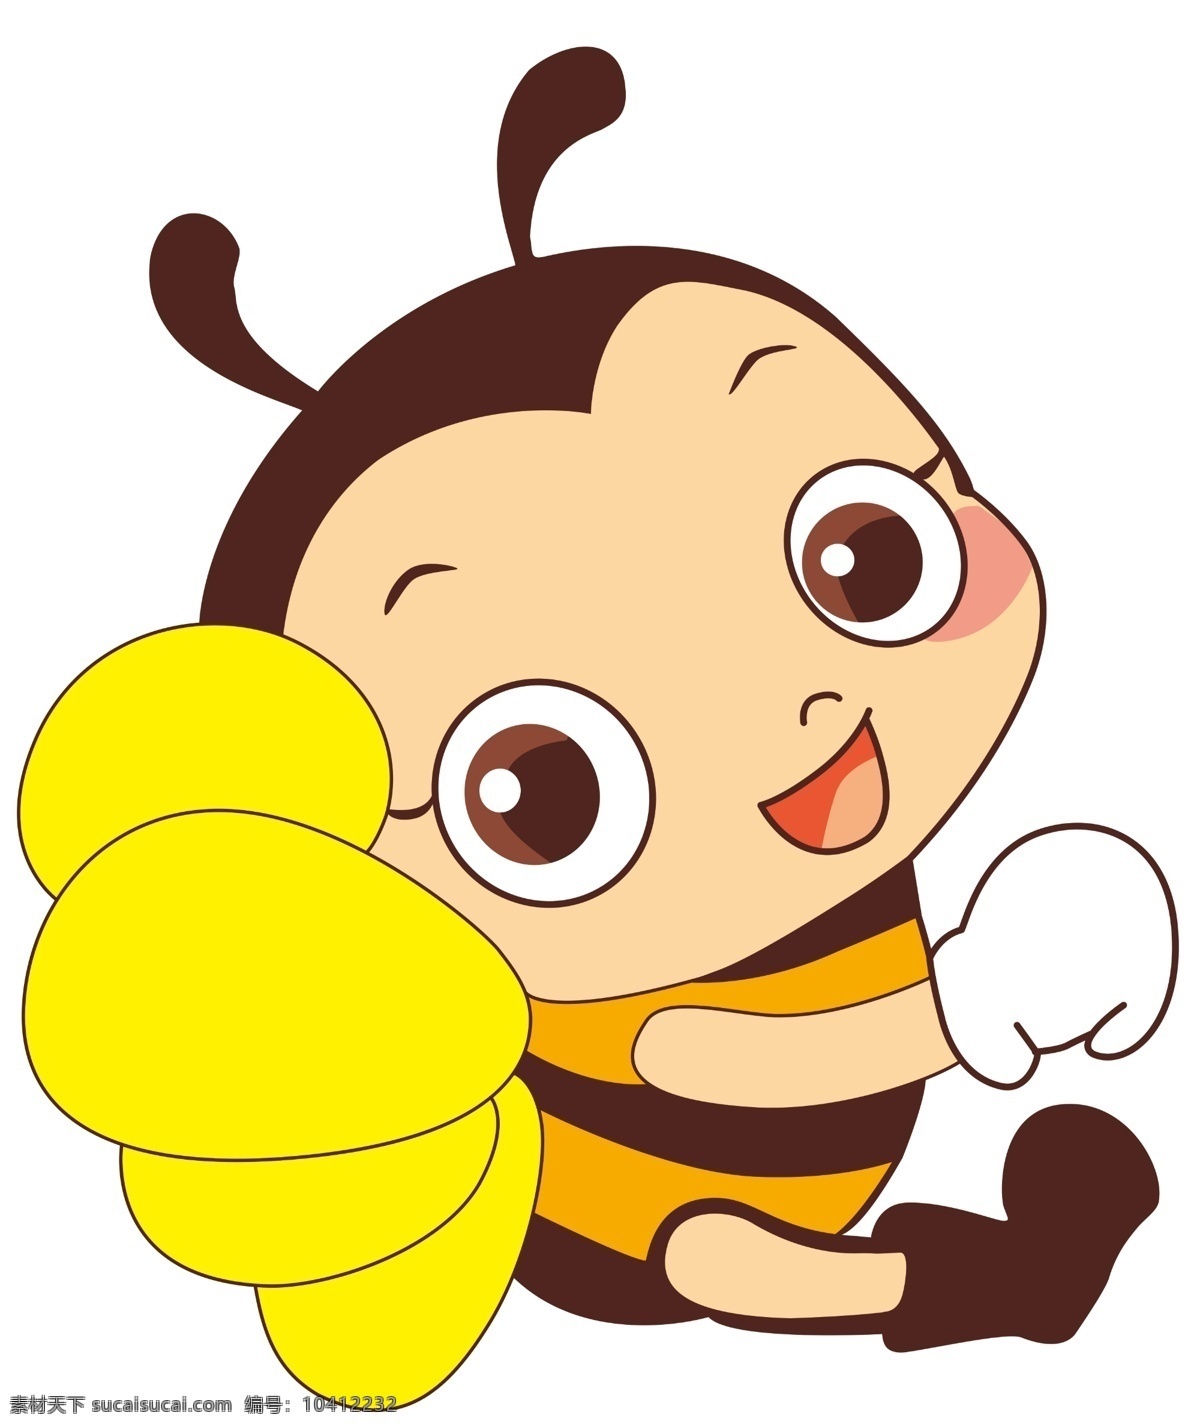 小蜜蜂 蜜蜂 卡通 可爱 黄色 动漫动画 动漫人物